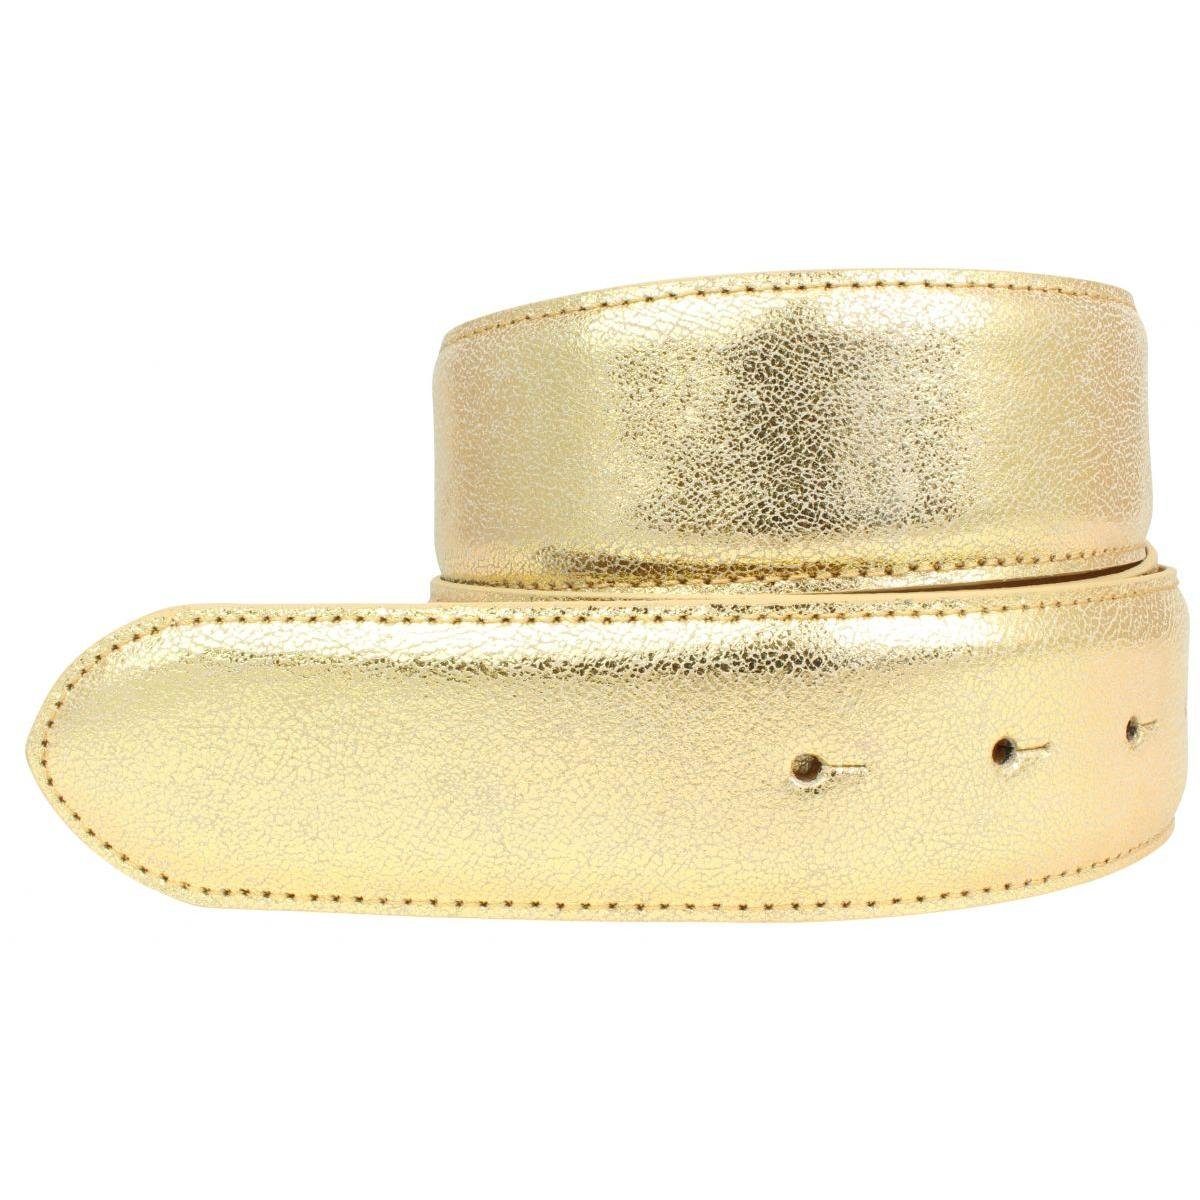 BELTINGER Ledergürtel Hochwertiger Gürtel Metall-Optik Echt Leder ohne Schnalle 4 cm - Meta Gold